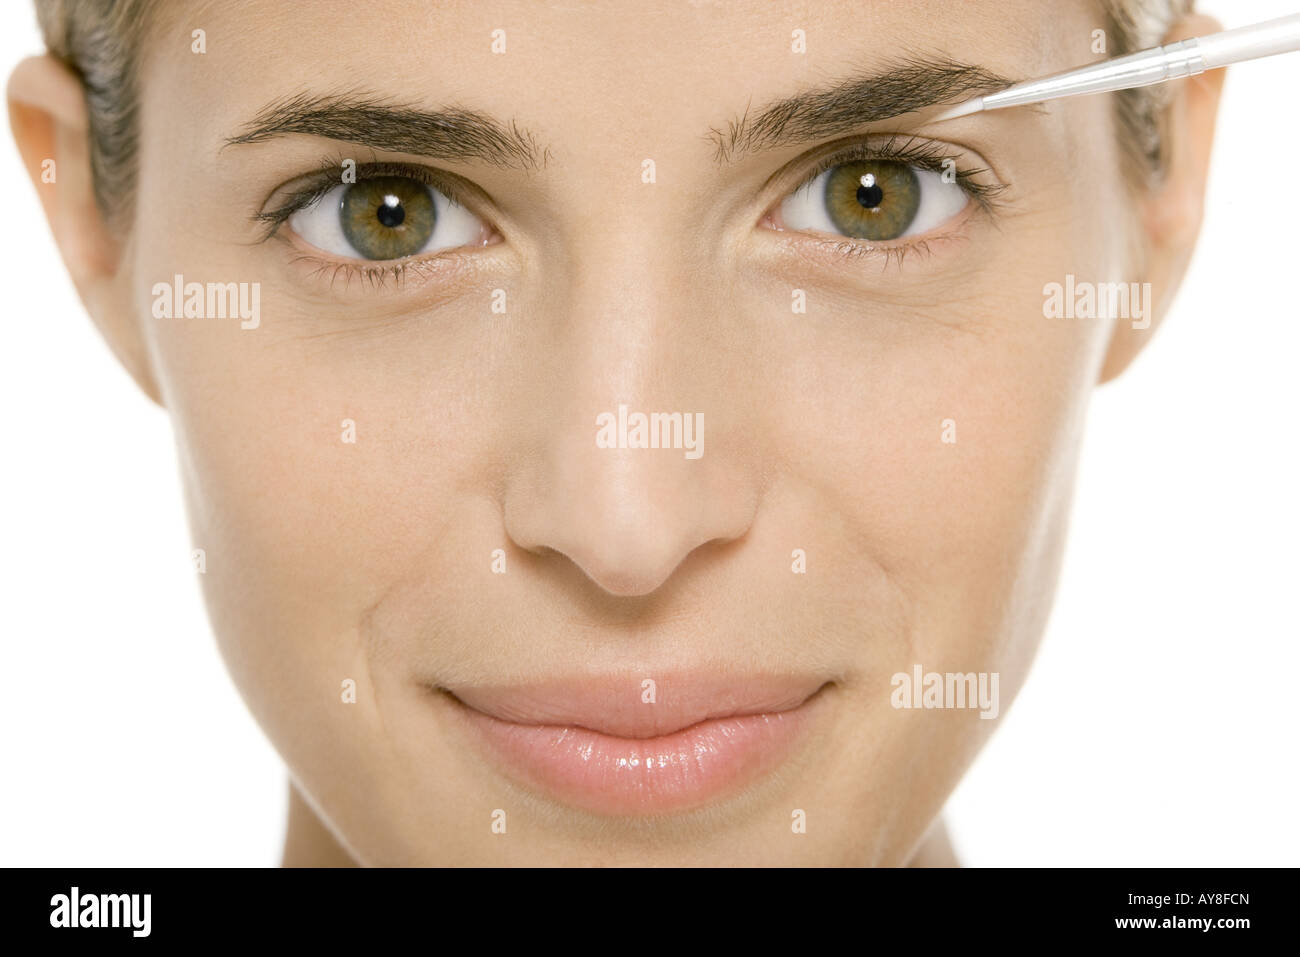 Woman applying make-up, smiling at camera Stock Photo